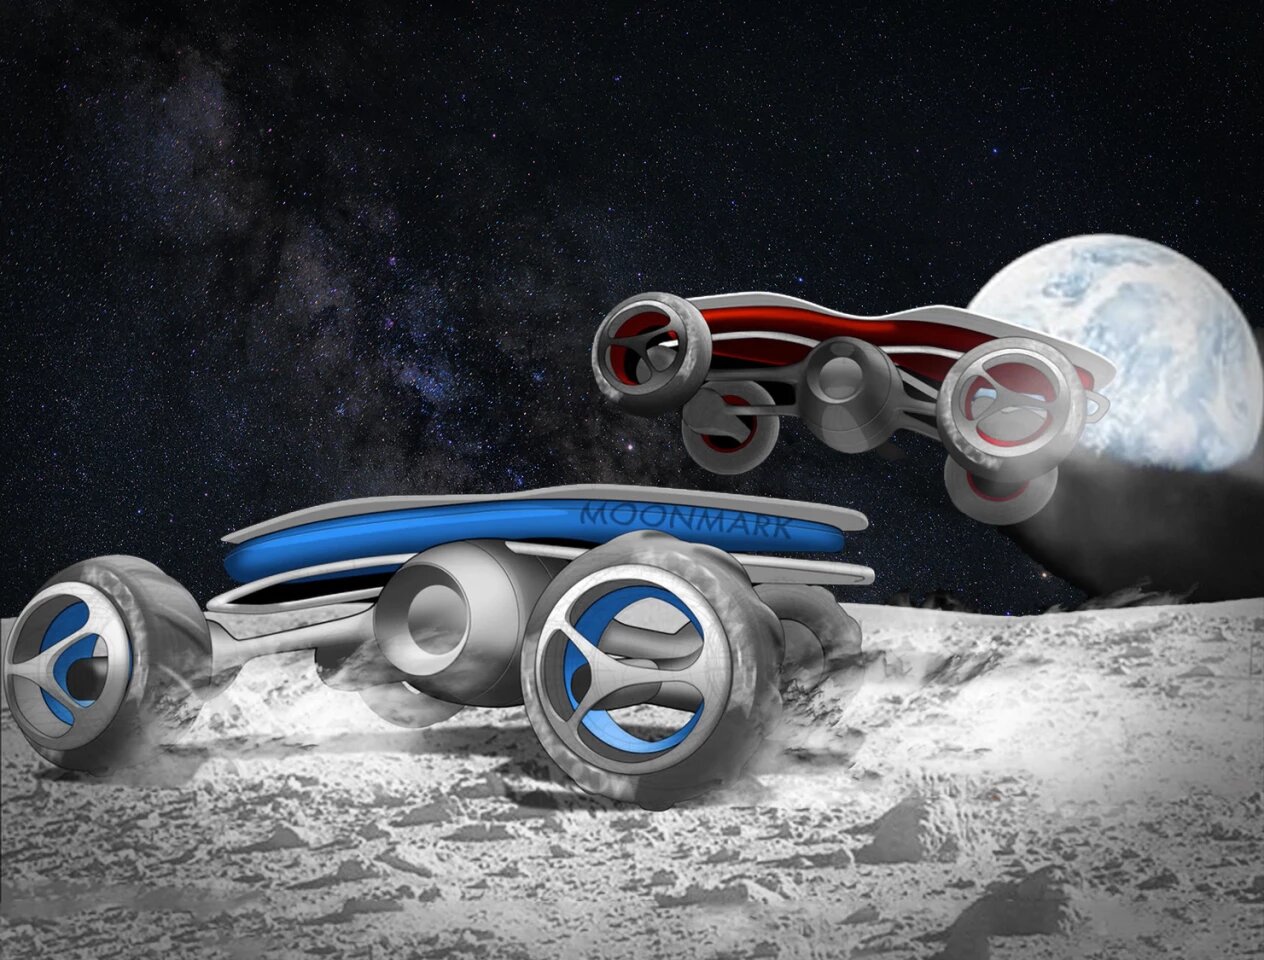 La start-up Moon Mark veut organiser une course de voitures télécommandées sur la Lune en 2021